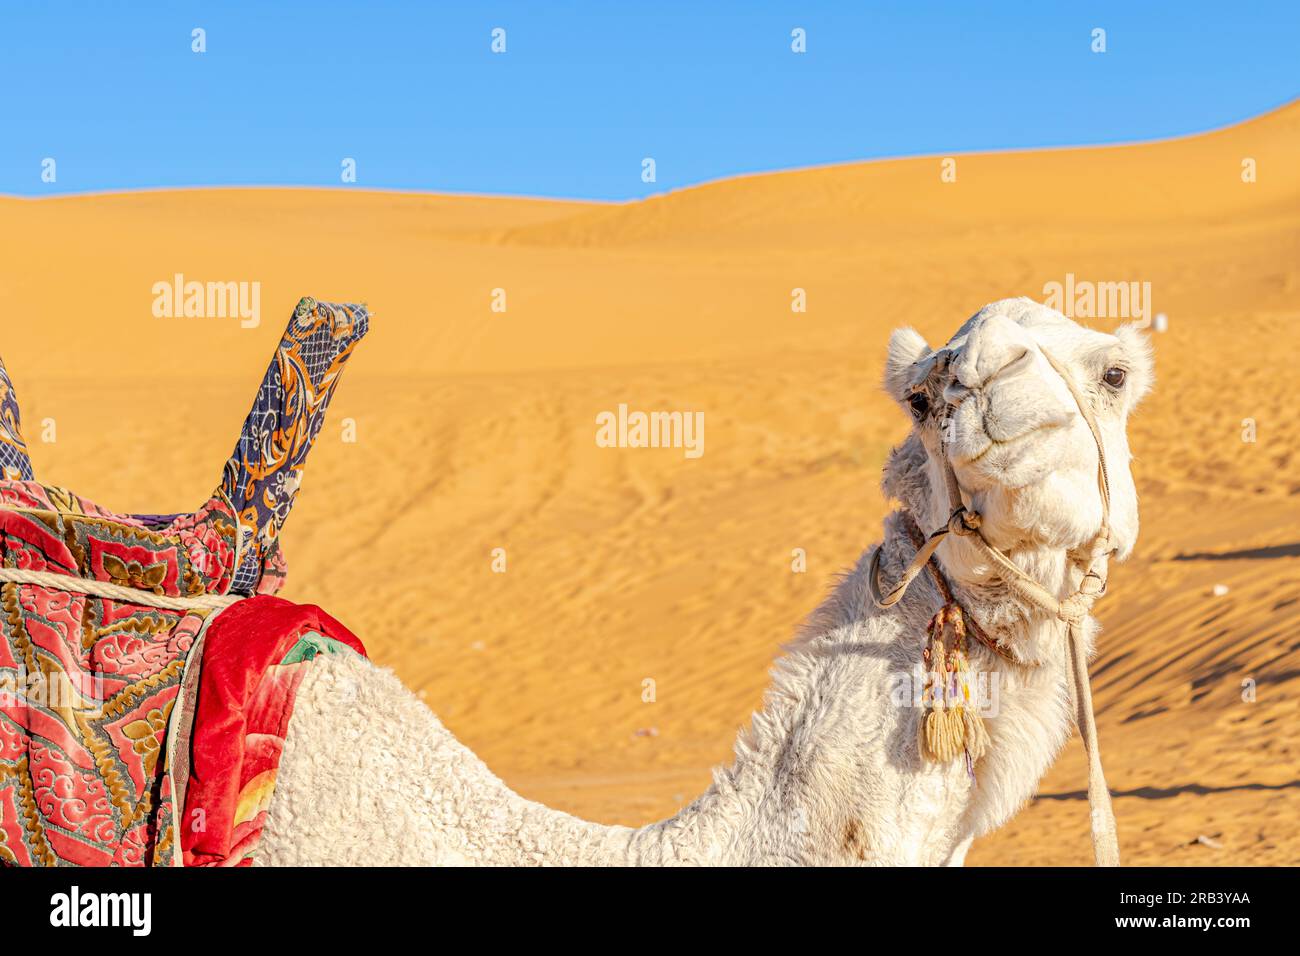 Cammello bianco dromedario sorridente nel deserto del Sahara. Vista laterale della fotocamera ritratto con redini bianchi e sella in tessuto rosso. Foto Stock